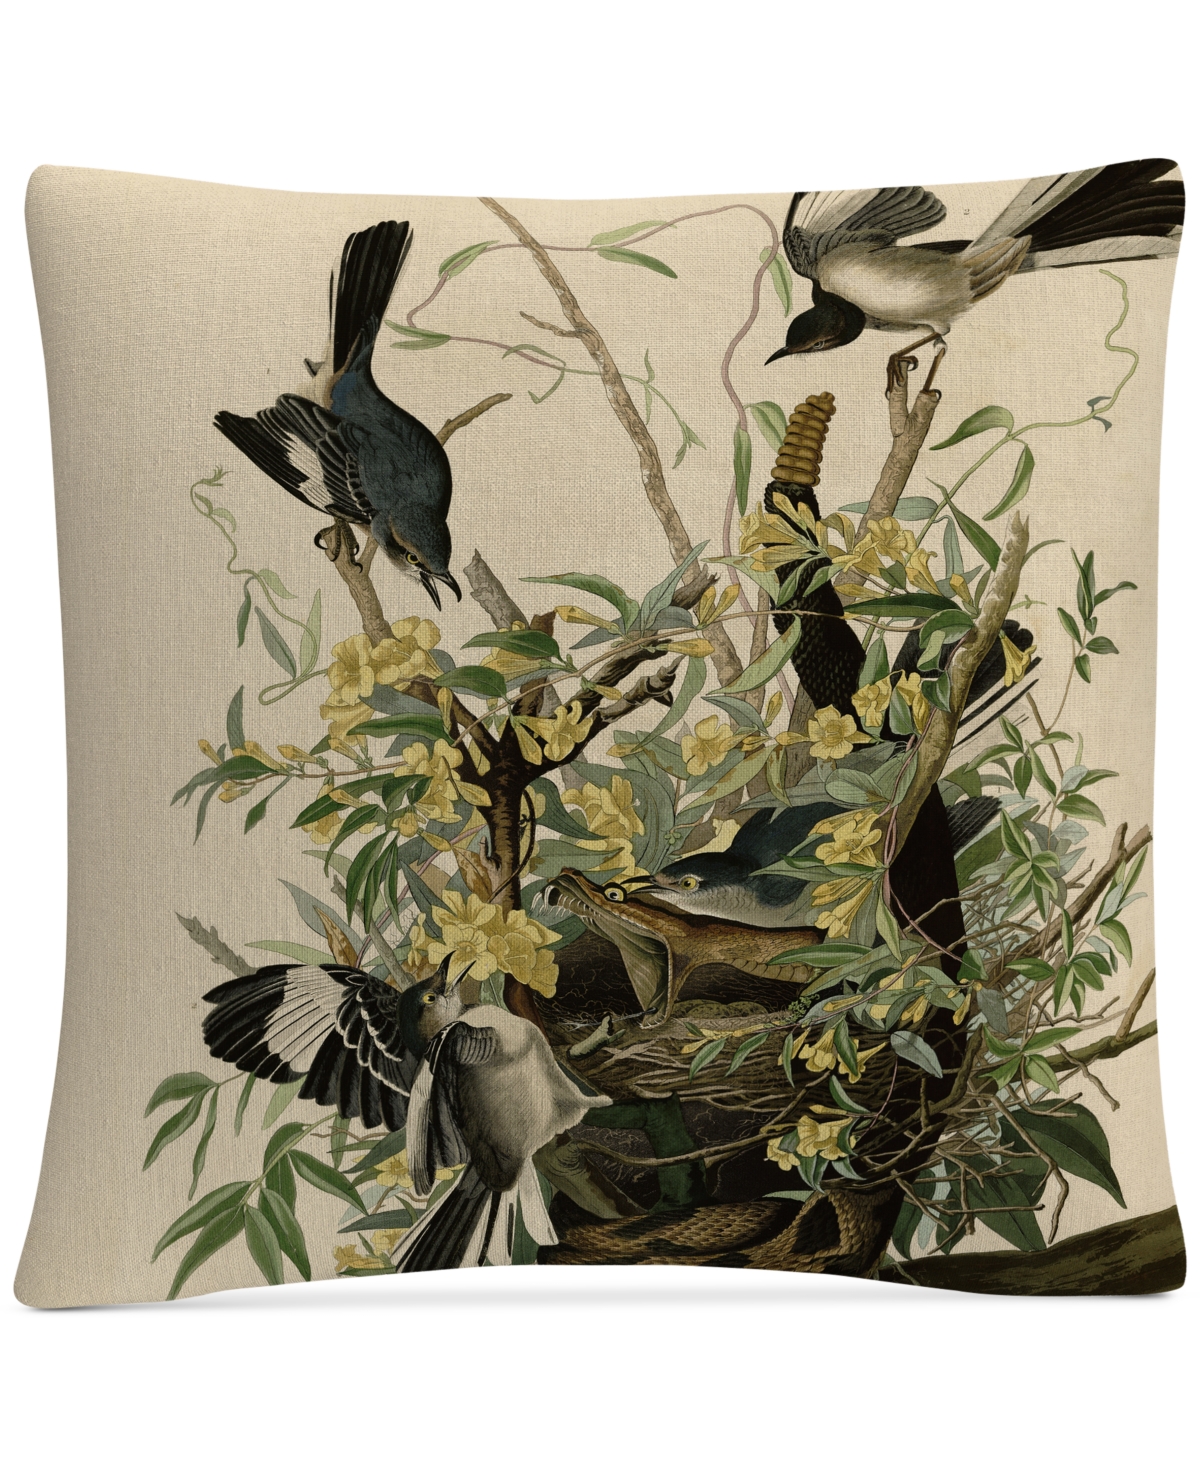 John James Audubon Mocking Birds and Snake Ii Decorative Pillow, 16 x 16